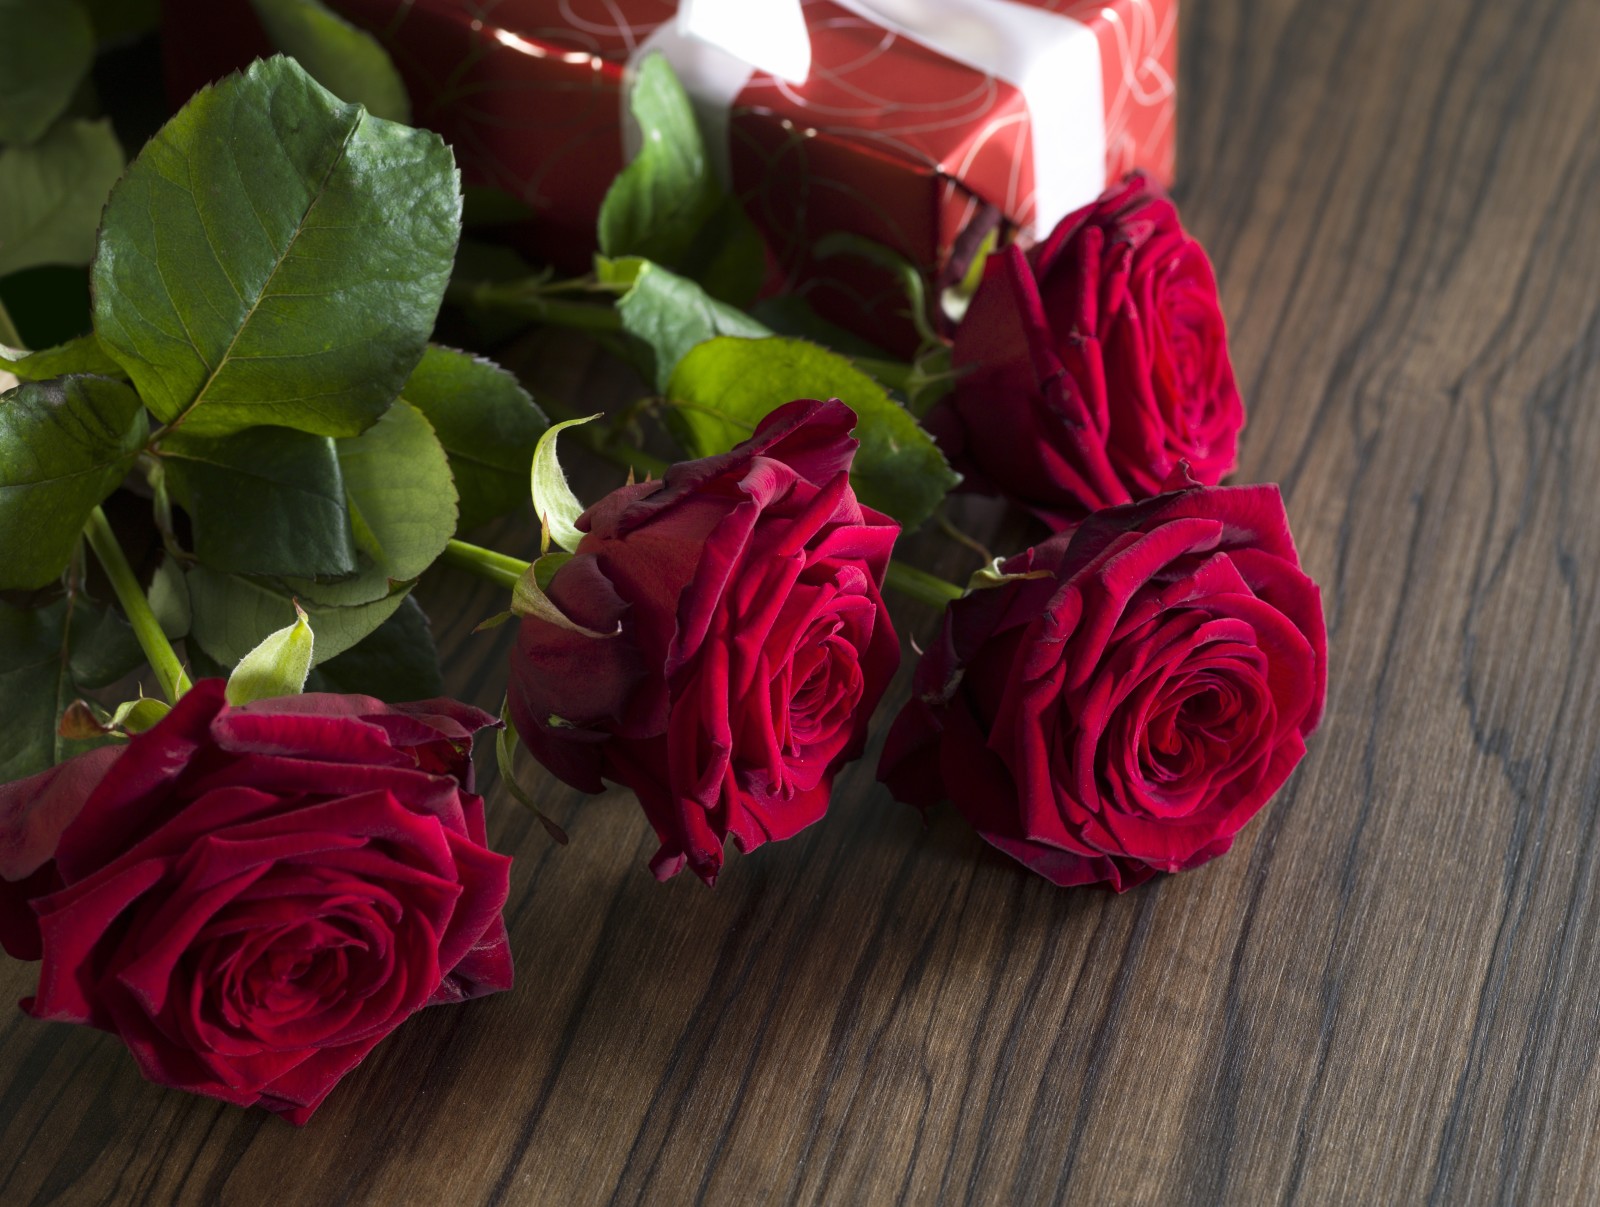 màu đỏ, yêu và quý, lãng mạn, quà tặng, hoa hồng, những bông hồng đỏ, ngày lễ tình nhân